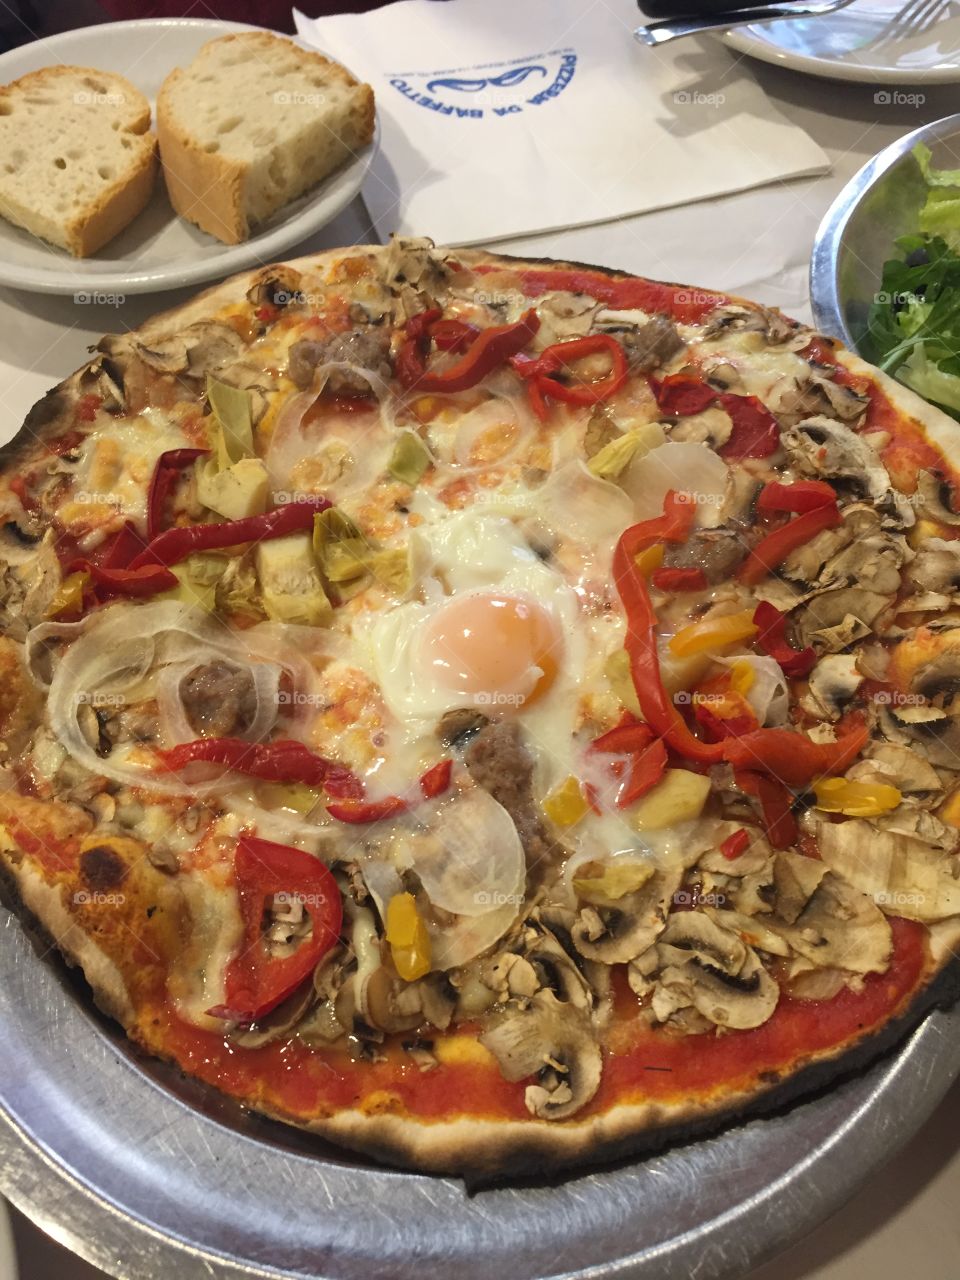 The Italian pizza 